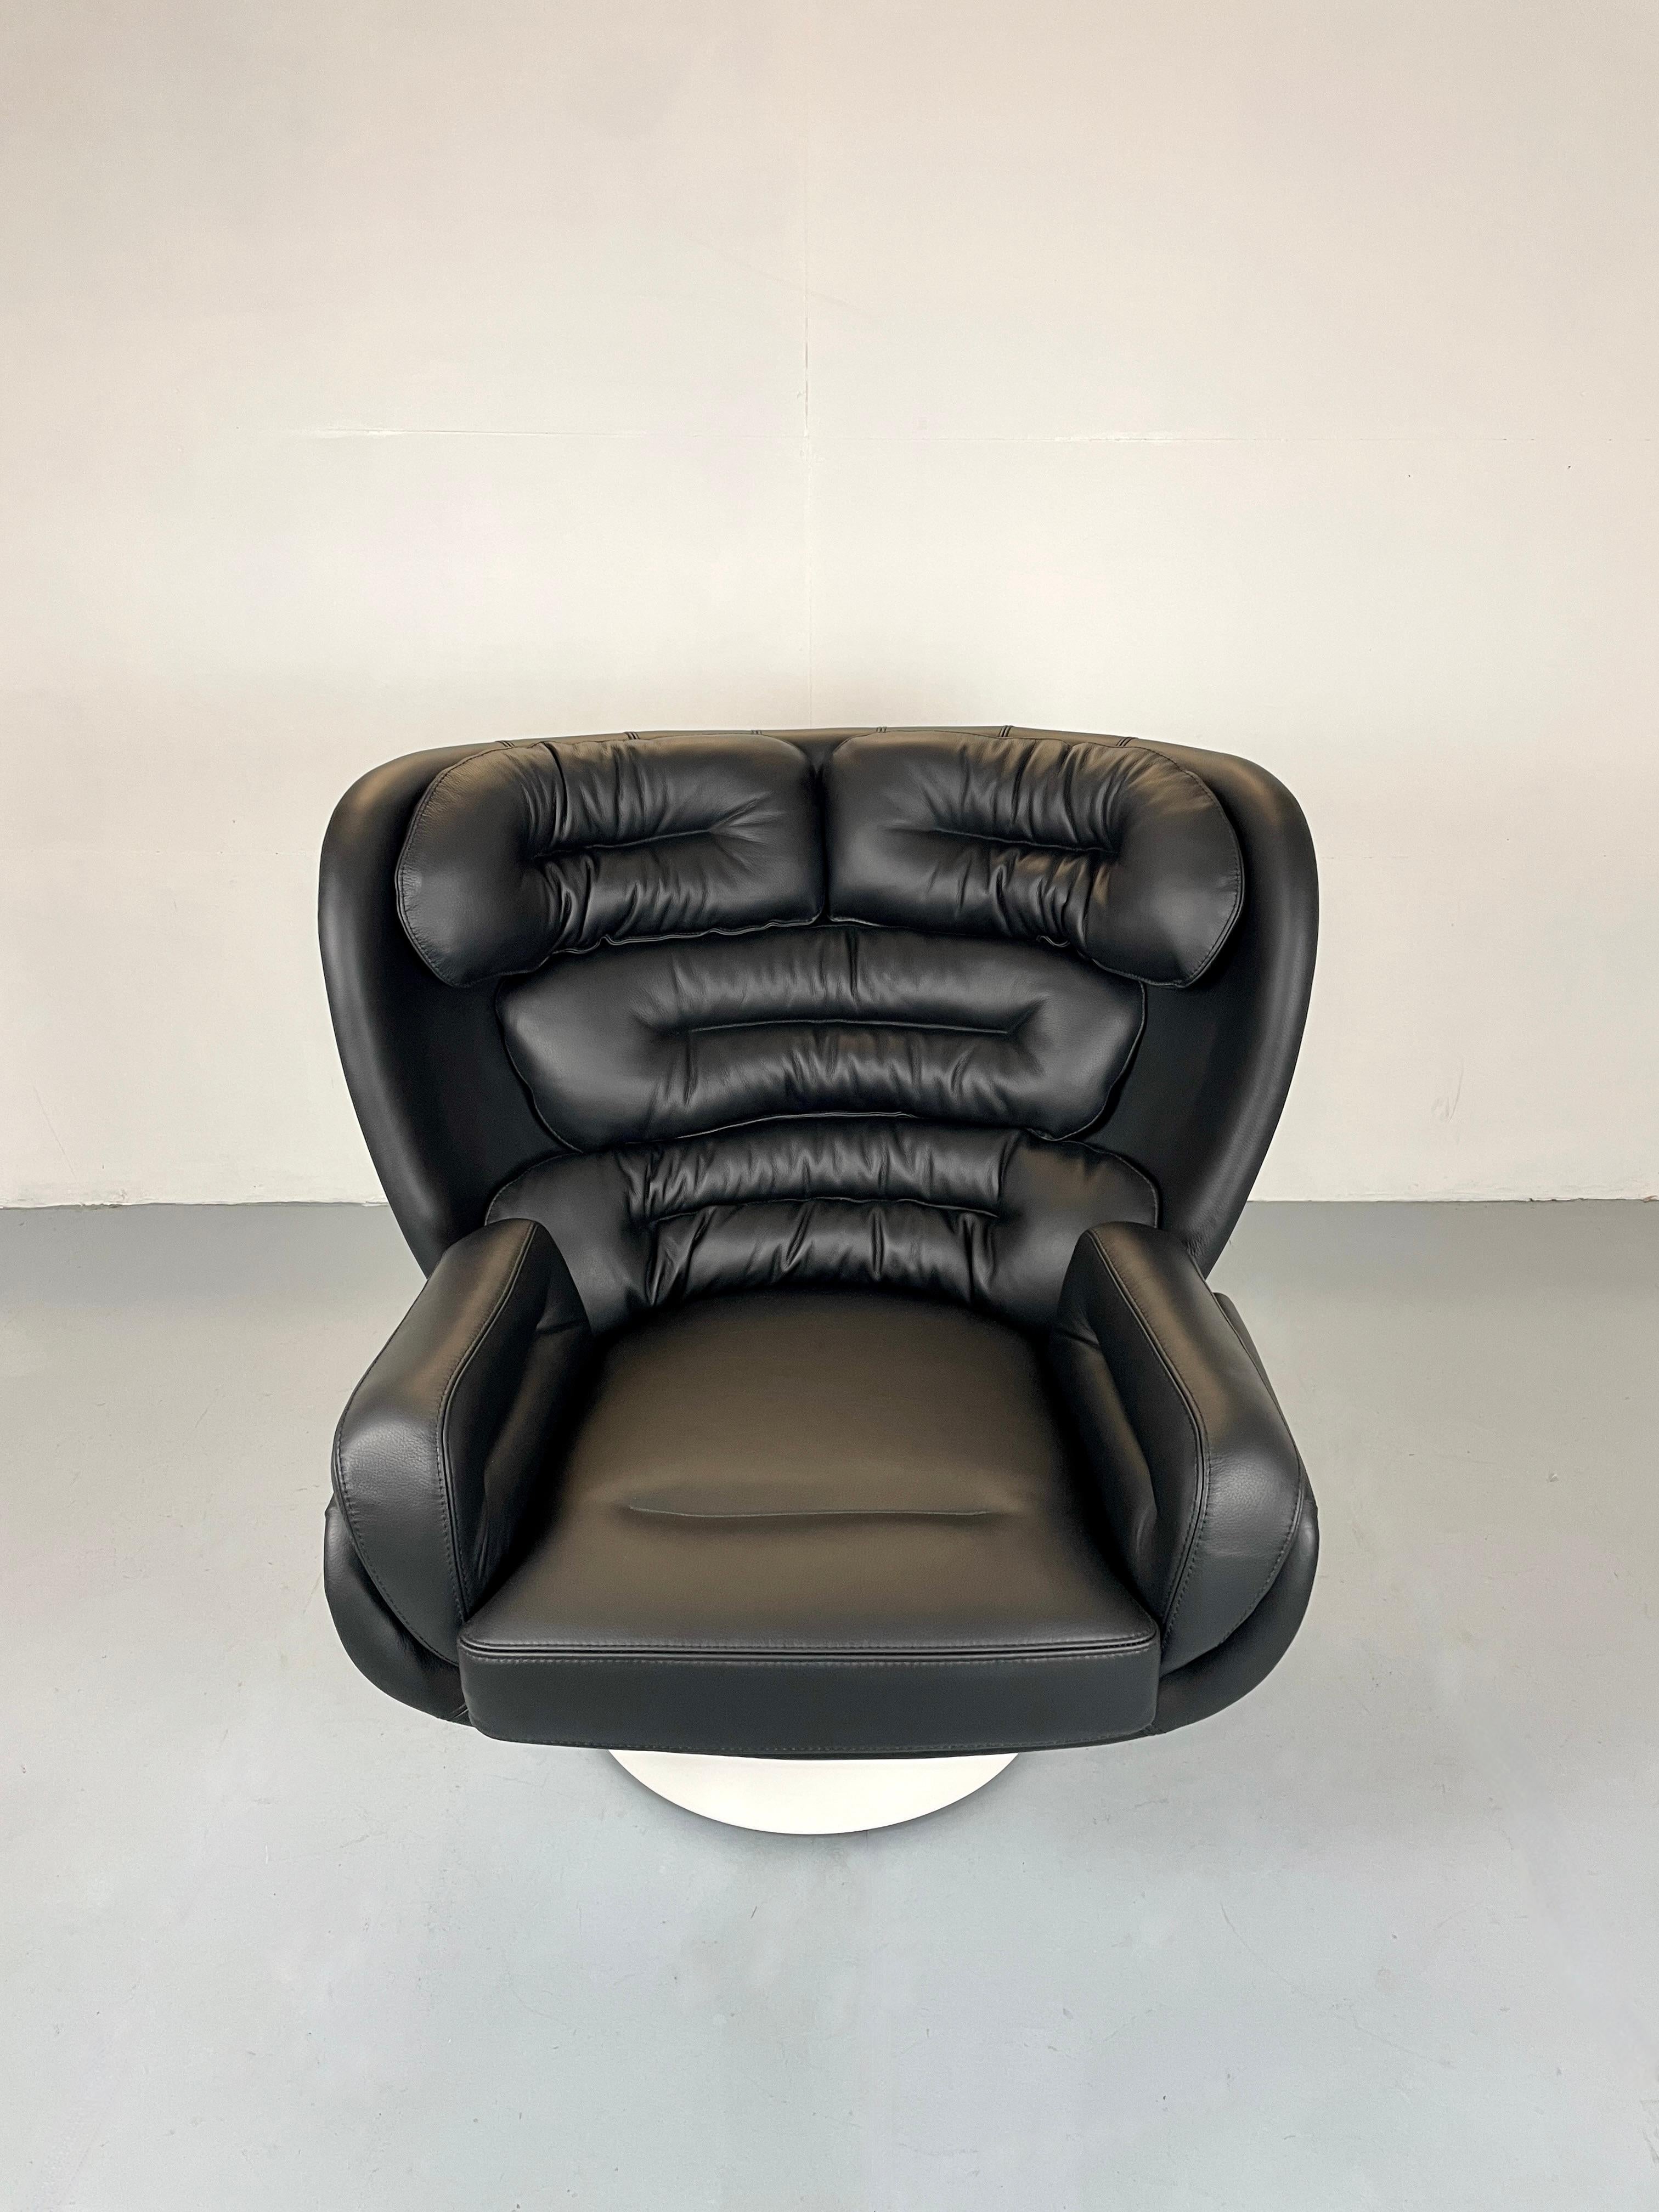 En 1964, Joe Colombo a conçu le fauteuil Elda en fibre de verre pour Comfort - il est produit inchangé en Italie depuis lors. 

Nous avons actuellement des chaises Elda en stock. Ils sont immédiatement disponibles. Ils sont accompagnés du certificat